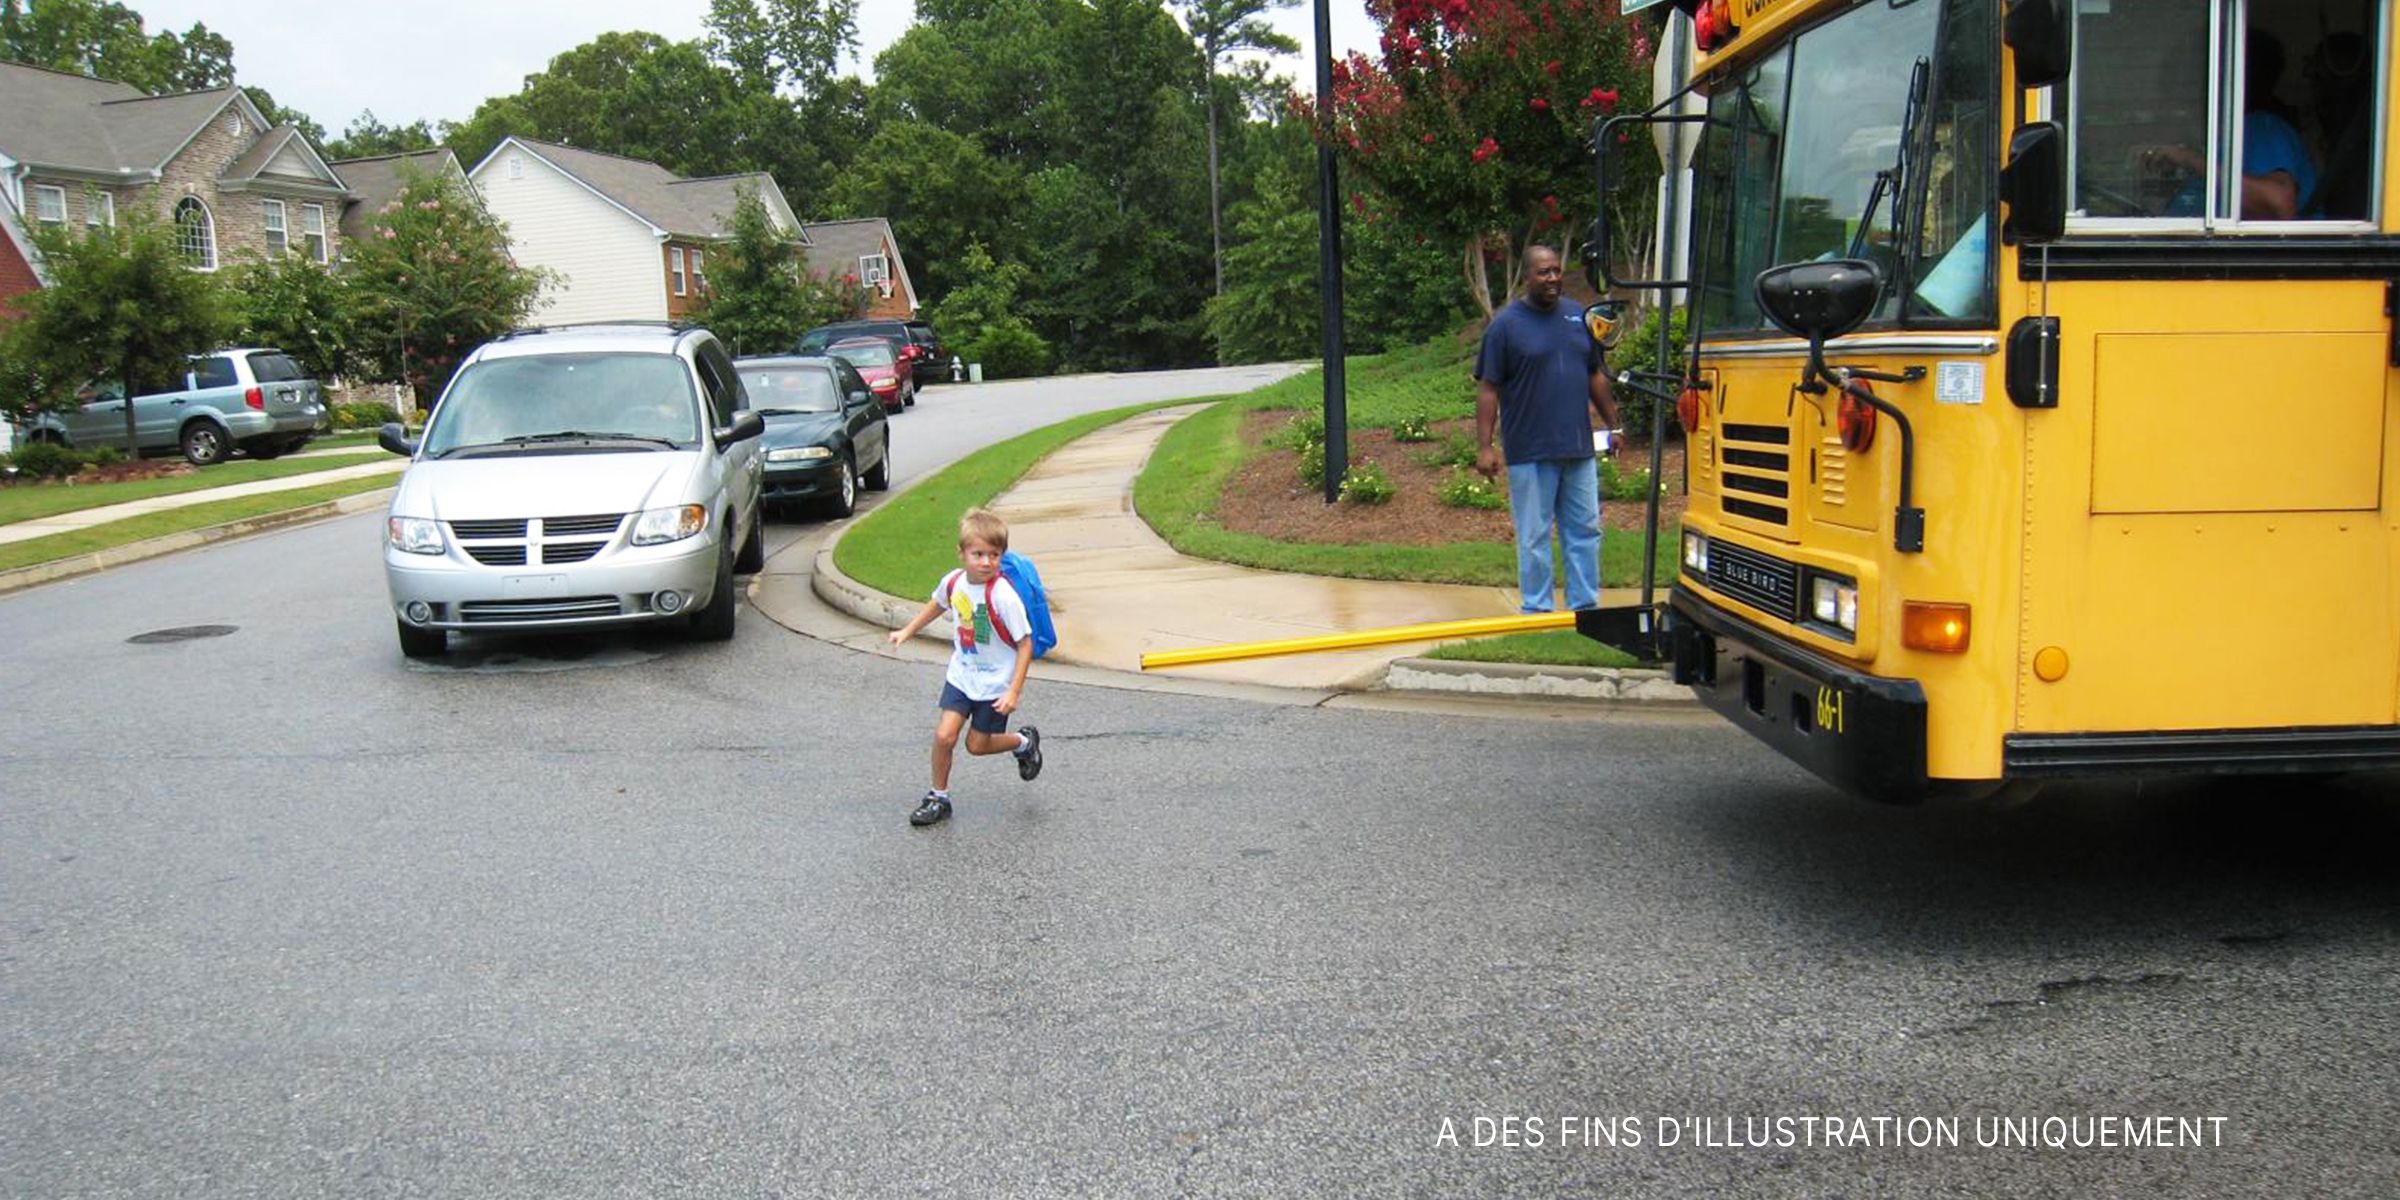 Petit garçon traversant une route en courant. | Source : Flickr / ThrasherDave (CC BY-SA 2.0)